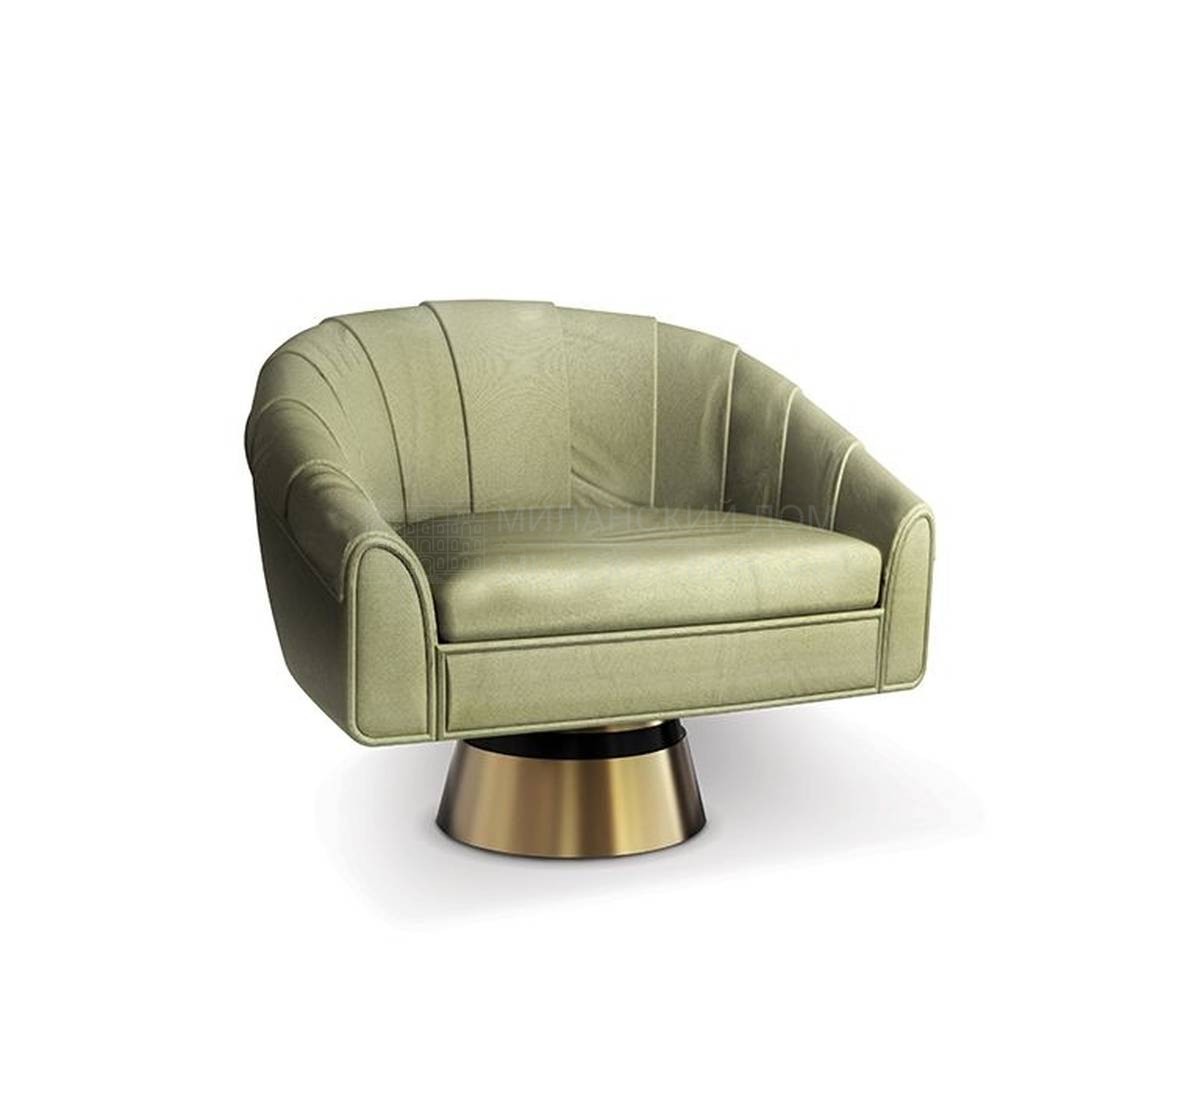 Круглое кресло Bogarde/armchair из Португалии фабрики DELIGHTFULL